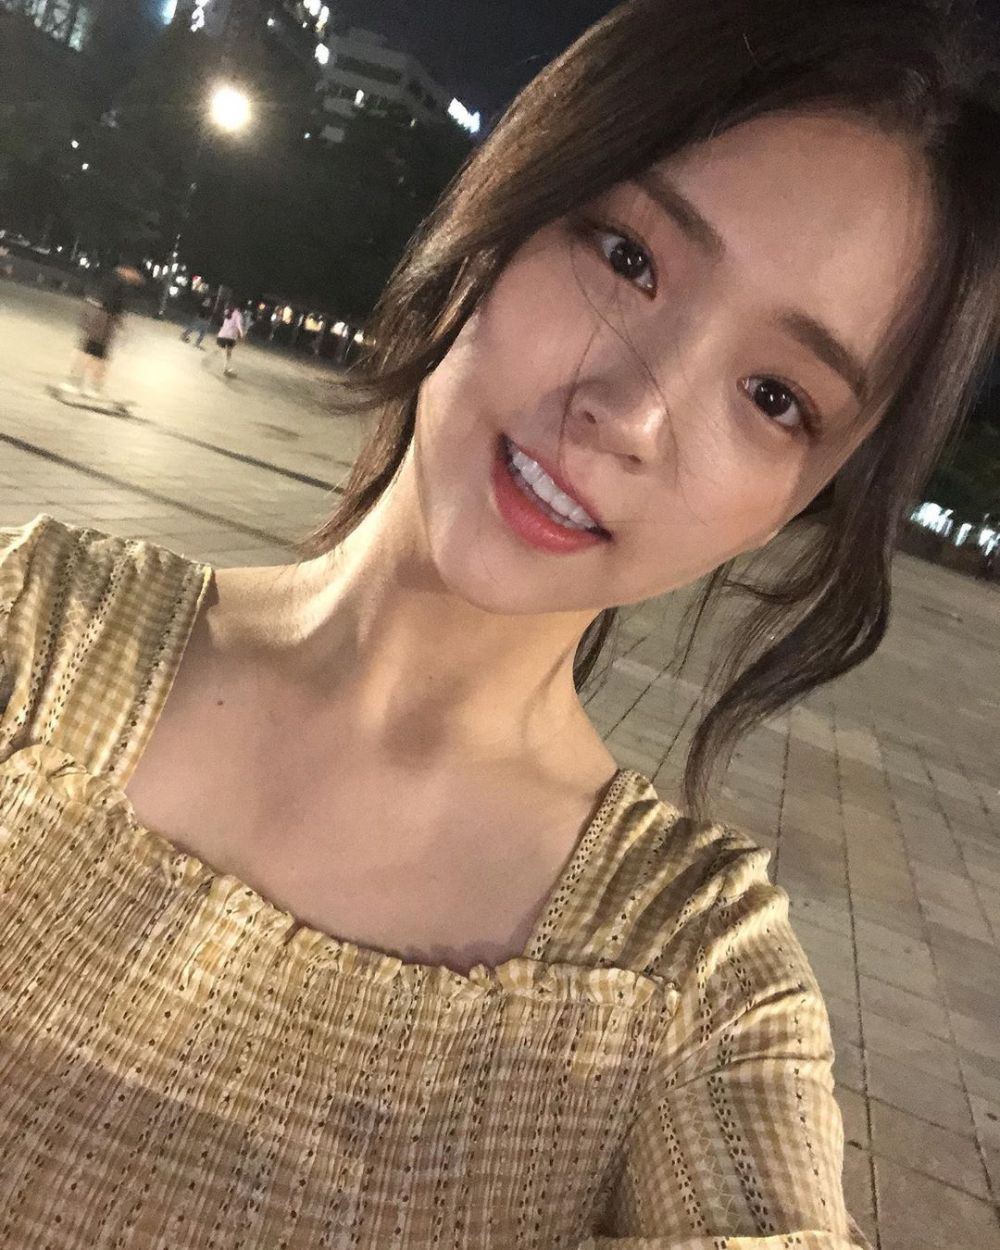 Ji-Eun Kim Sexy and Hottest Photos , Latest Pics